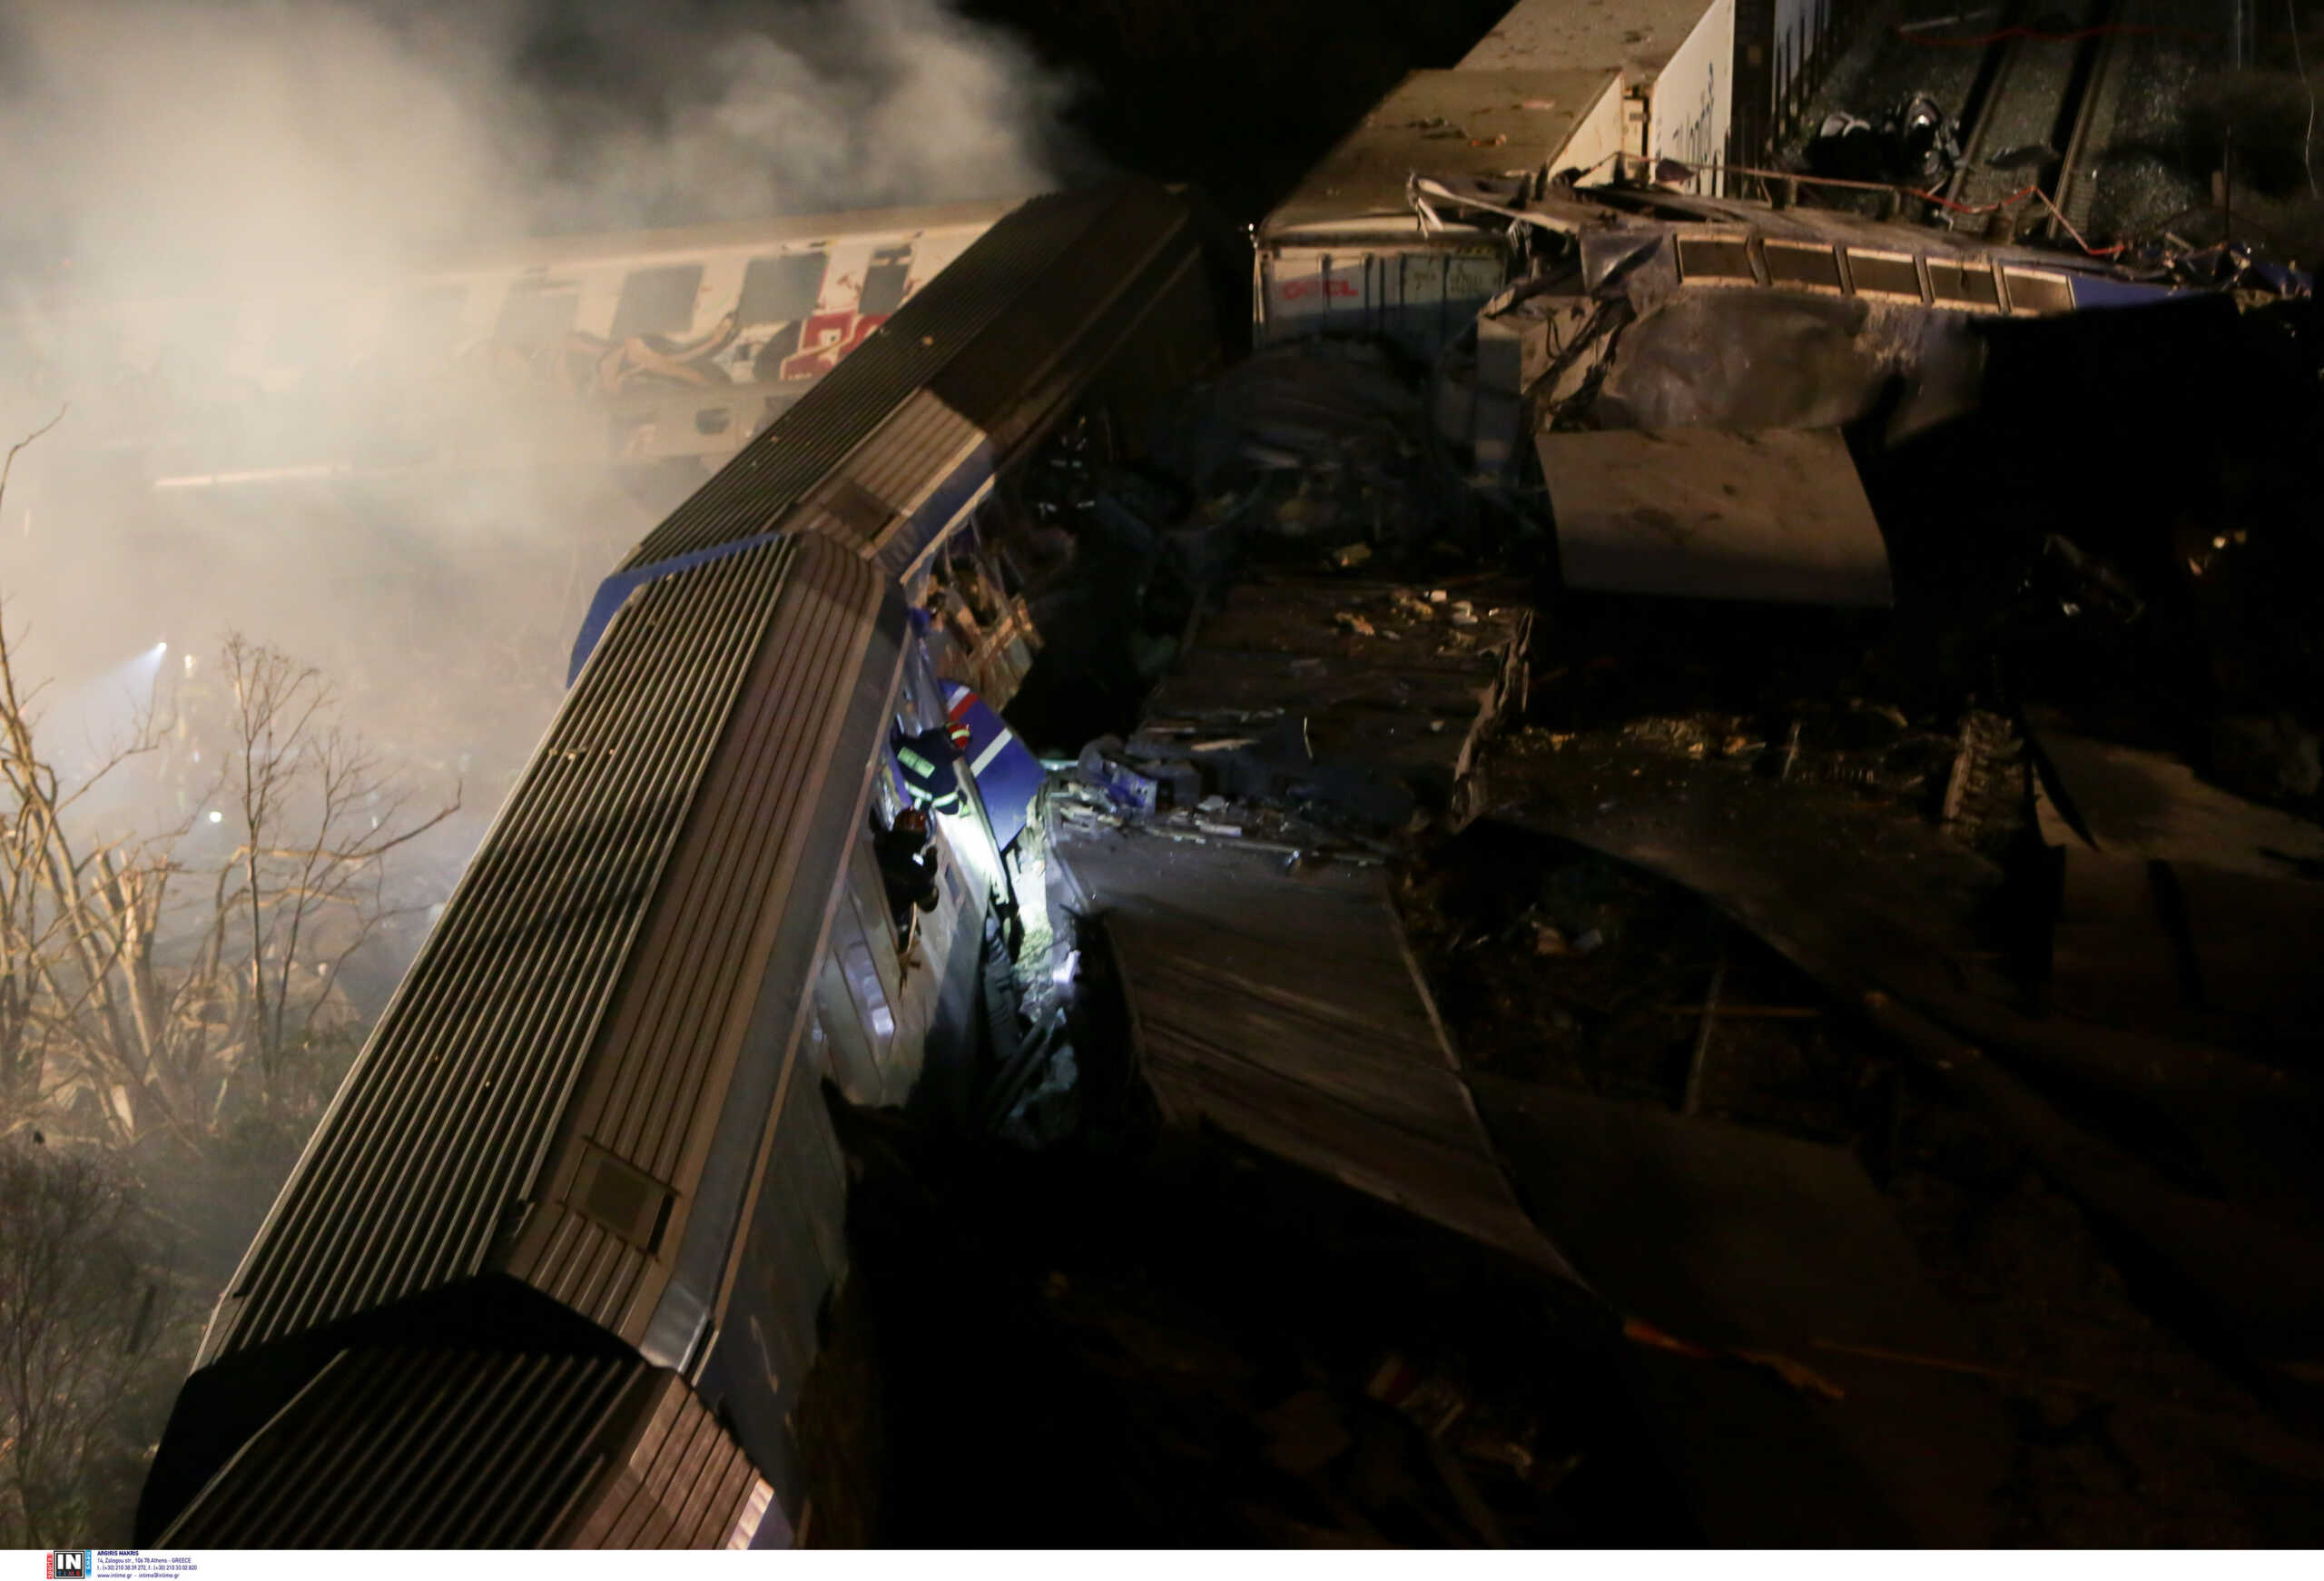 Σύγκρουση τρένων στη Λάρισα: Τηλέφωνα που μπορούν να επικοινωνούν οι συγγενείς των επιβατών